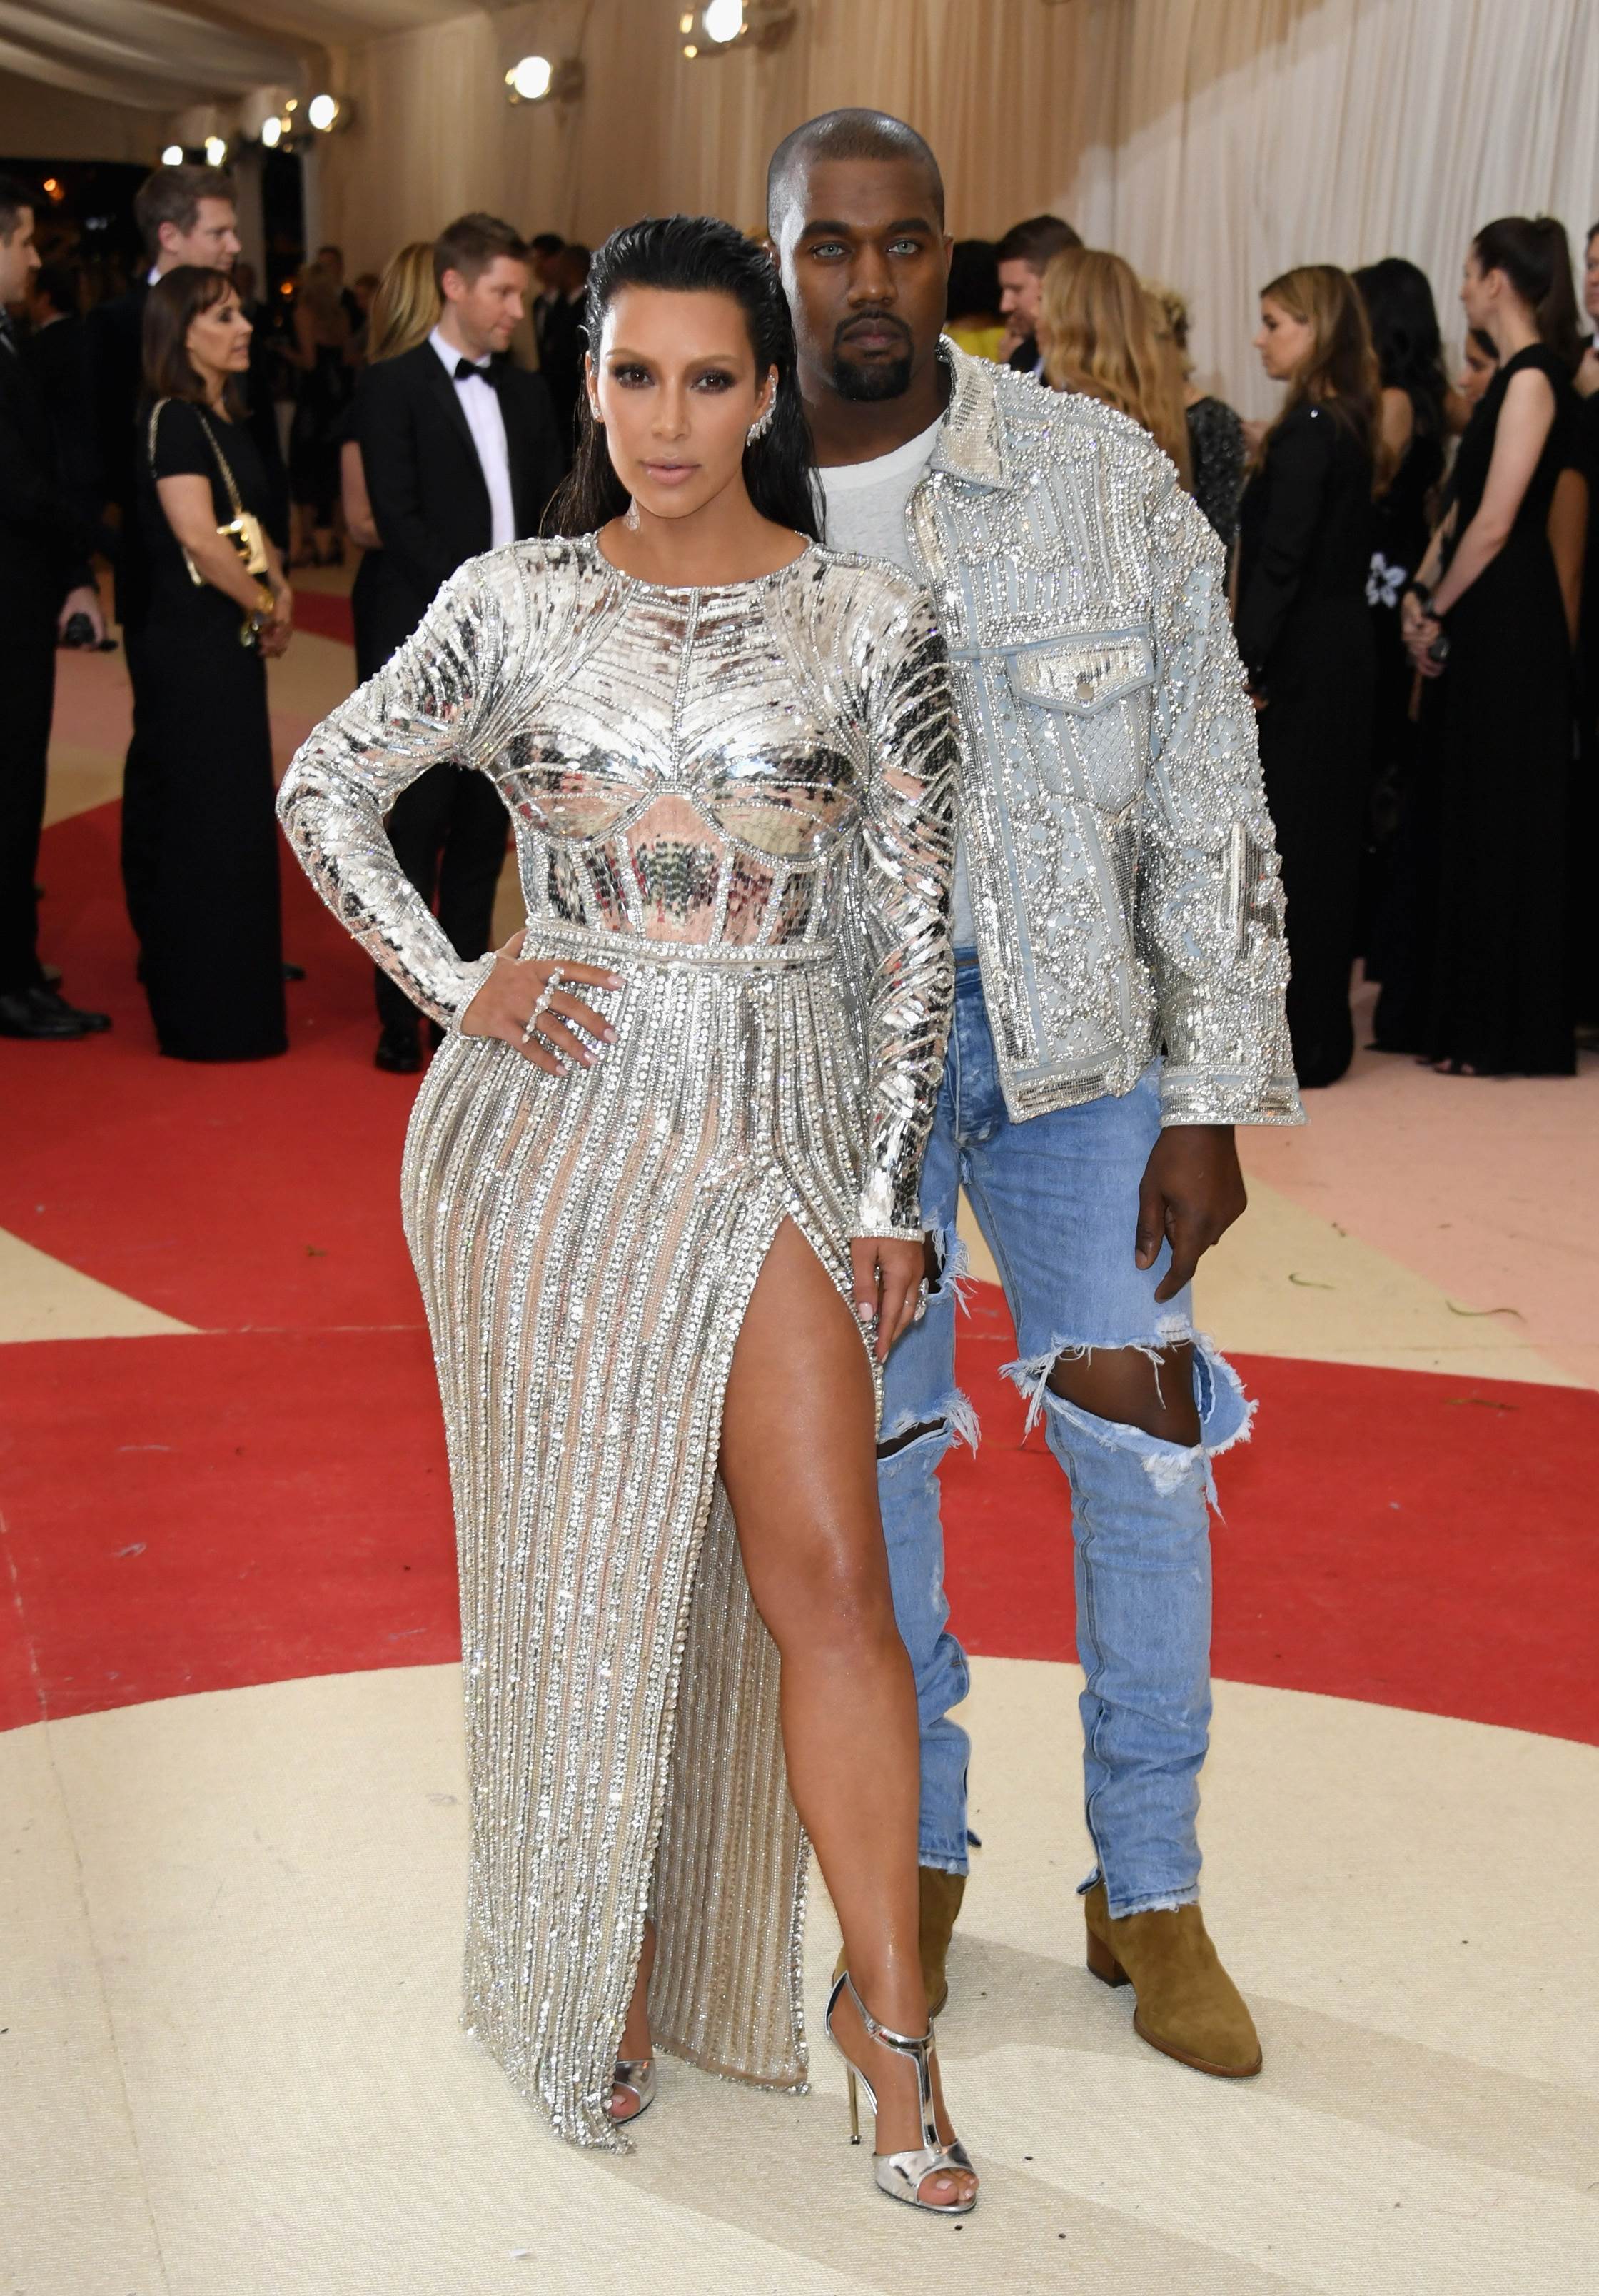 Vợ chồng nam ca sĩ Kanye West cũng tạo ấn tượng với thương hiệu Balmain, tuy nhiên, Kanye lại ghi điểm xấu bởi chiếc quần jeans rách có chút 